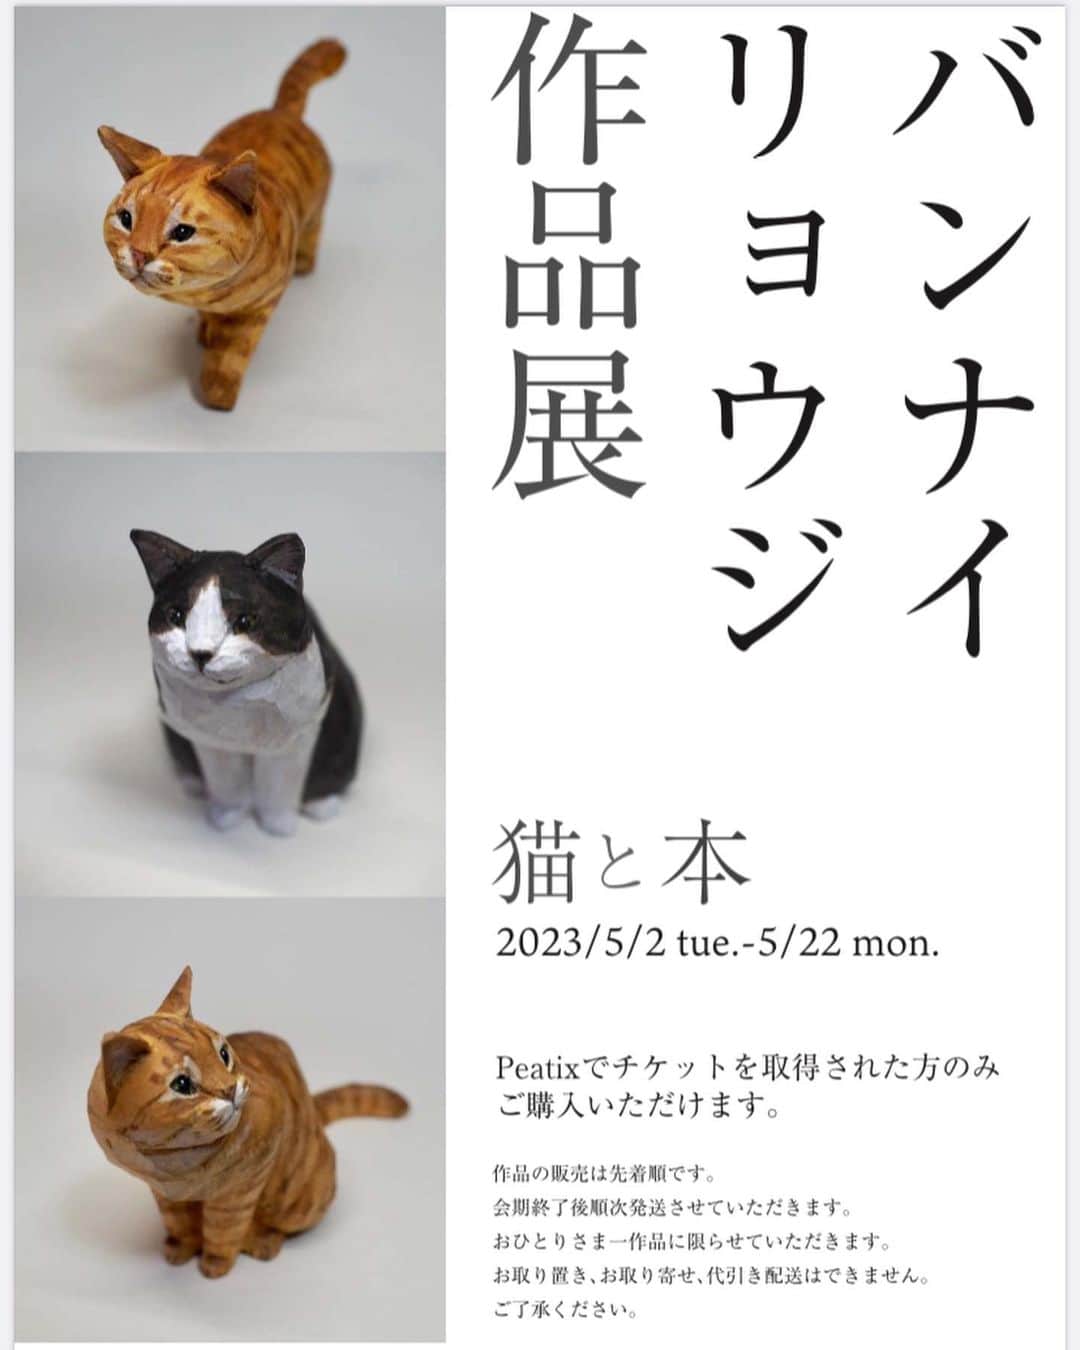 yamanekoのインスタグラム：「展示会のお知らせです。 フライヤーの写真は前回の猫たちですが、 2枚目のキジトラちゃんは連れて行きます😹😹😹 宜しくお願い致します。 ご購入ご希望の方はこちらをご覧ください💁‍♂️ @yurindo_ebisu  作品は期間中展示してありますので恵比寿にお寄りの際は是非是非  バンナイリョウジ作品展〜猫と本」 ・期間　5/2-5/22 ・場所　有隣堂アトレ恵比寿店　中央レジ横柱周りフェアコーナー ・販売方法 ①イベント情報サイトPeatixにてチケットを取得（無料）してください。 こちらは用意でき次第有隣堂アトレ恵比寿店のInstagramでお知らせします。@yurindo_ebisu ②初日5/2は10:00から有隣堂アトレ恵比寿店にてPeatixのチケットをお持ちの方に整理券を配布します。こちらも詳細は恵比寿店のInstagramでお知らせします。※お電話でのお問い合わせはご遠慮ください。 ③作品の販売は先着順です。 ④お一人一作品までの販売です。別の端末でチケットを取得されても無効とさせていただきます。 ⑤作品は会期終了後に順次発送致します。配送無料です。販売終了後も作品は会期期間中展示致します。 ⑥作品のお取り置き、お取り寄せ、代引き配送はできません。  ※初日にご来店予定の方は館内を走らないようにお願い致します。」